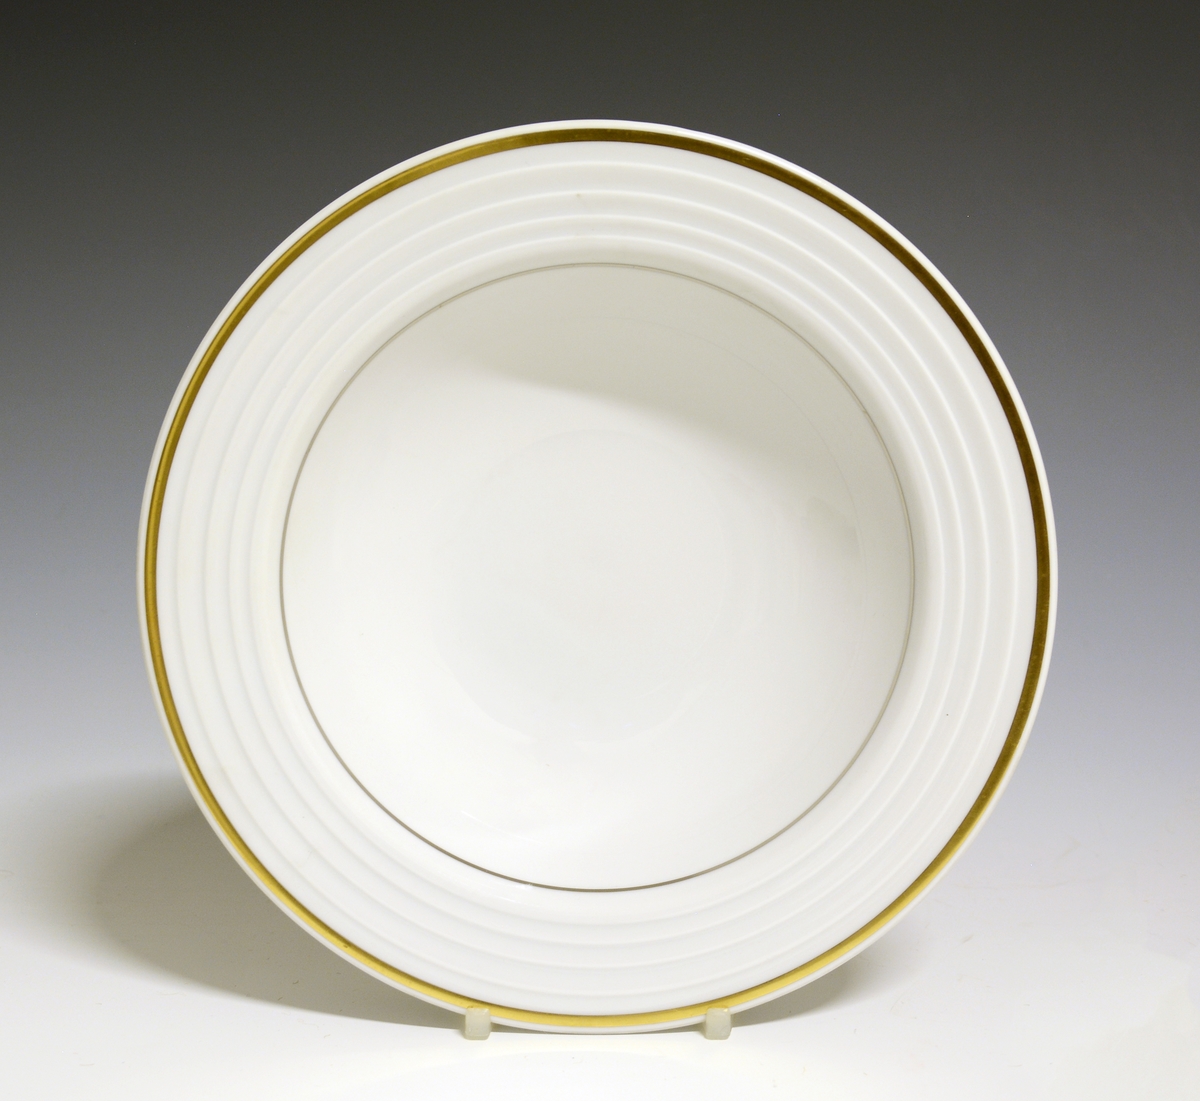 Dyp tallerken av porselen med hvit glasur. I fanens gods riller. En bredere gullstripe ytterst på fanen og en smalere innerst.
Modell: Saturn
Dekor: Comet